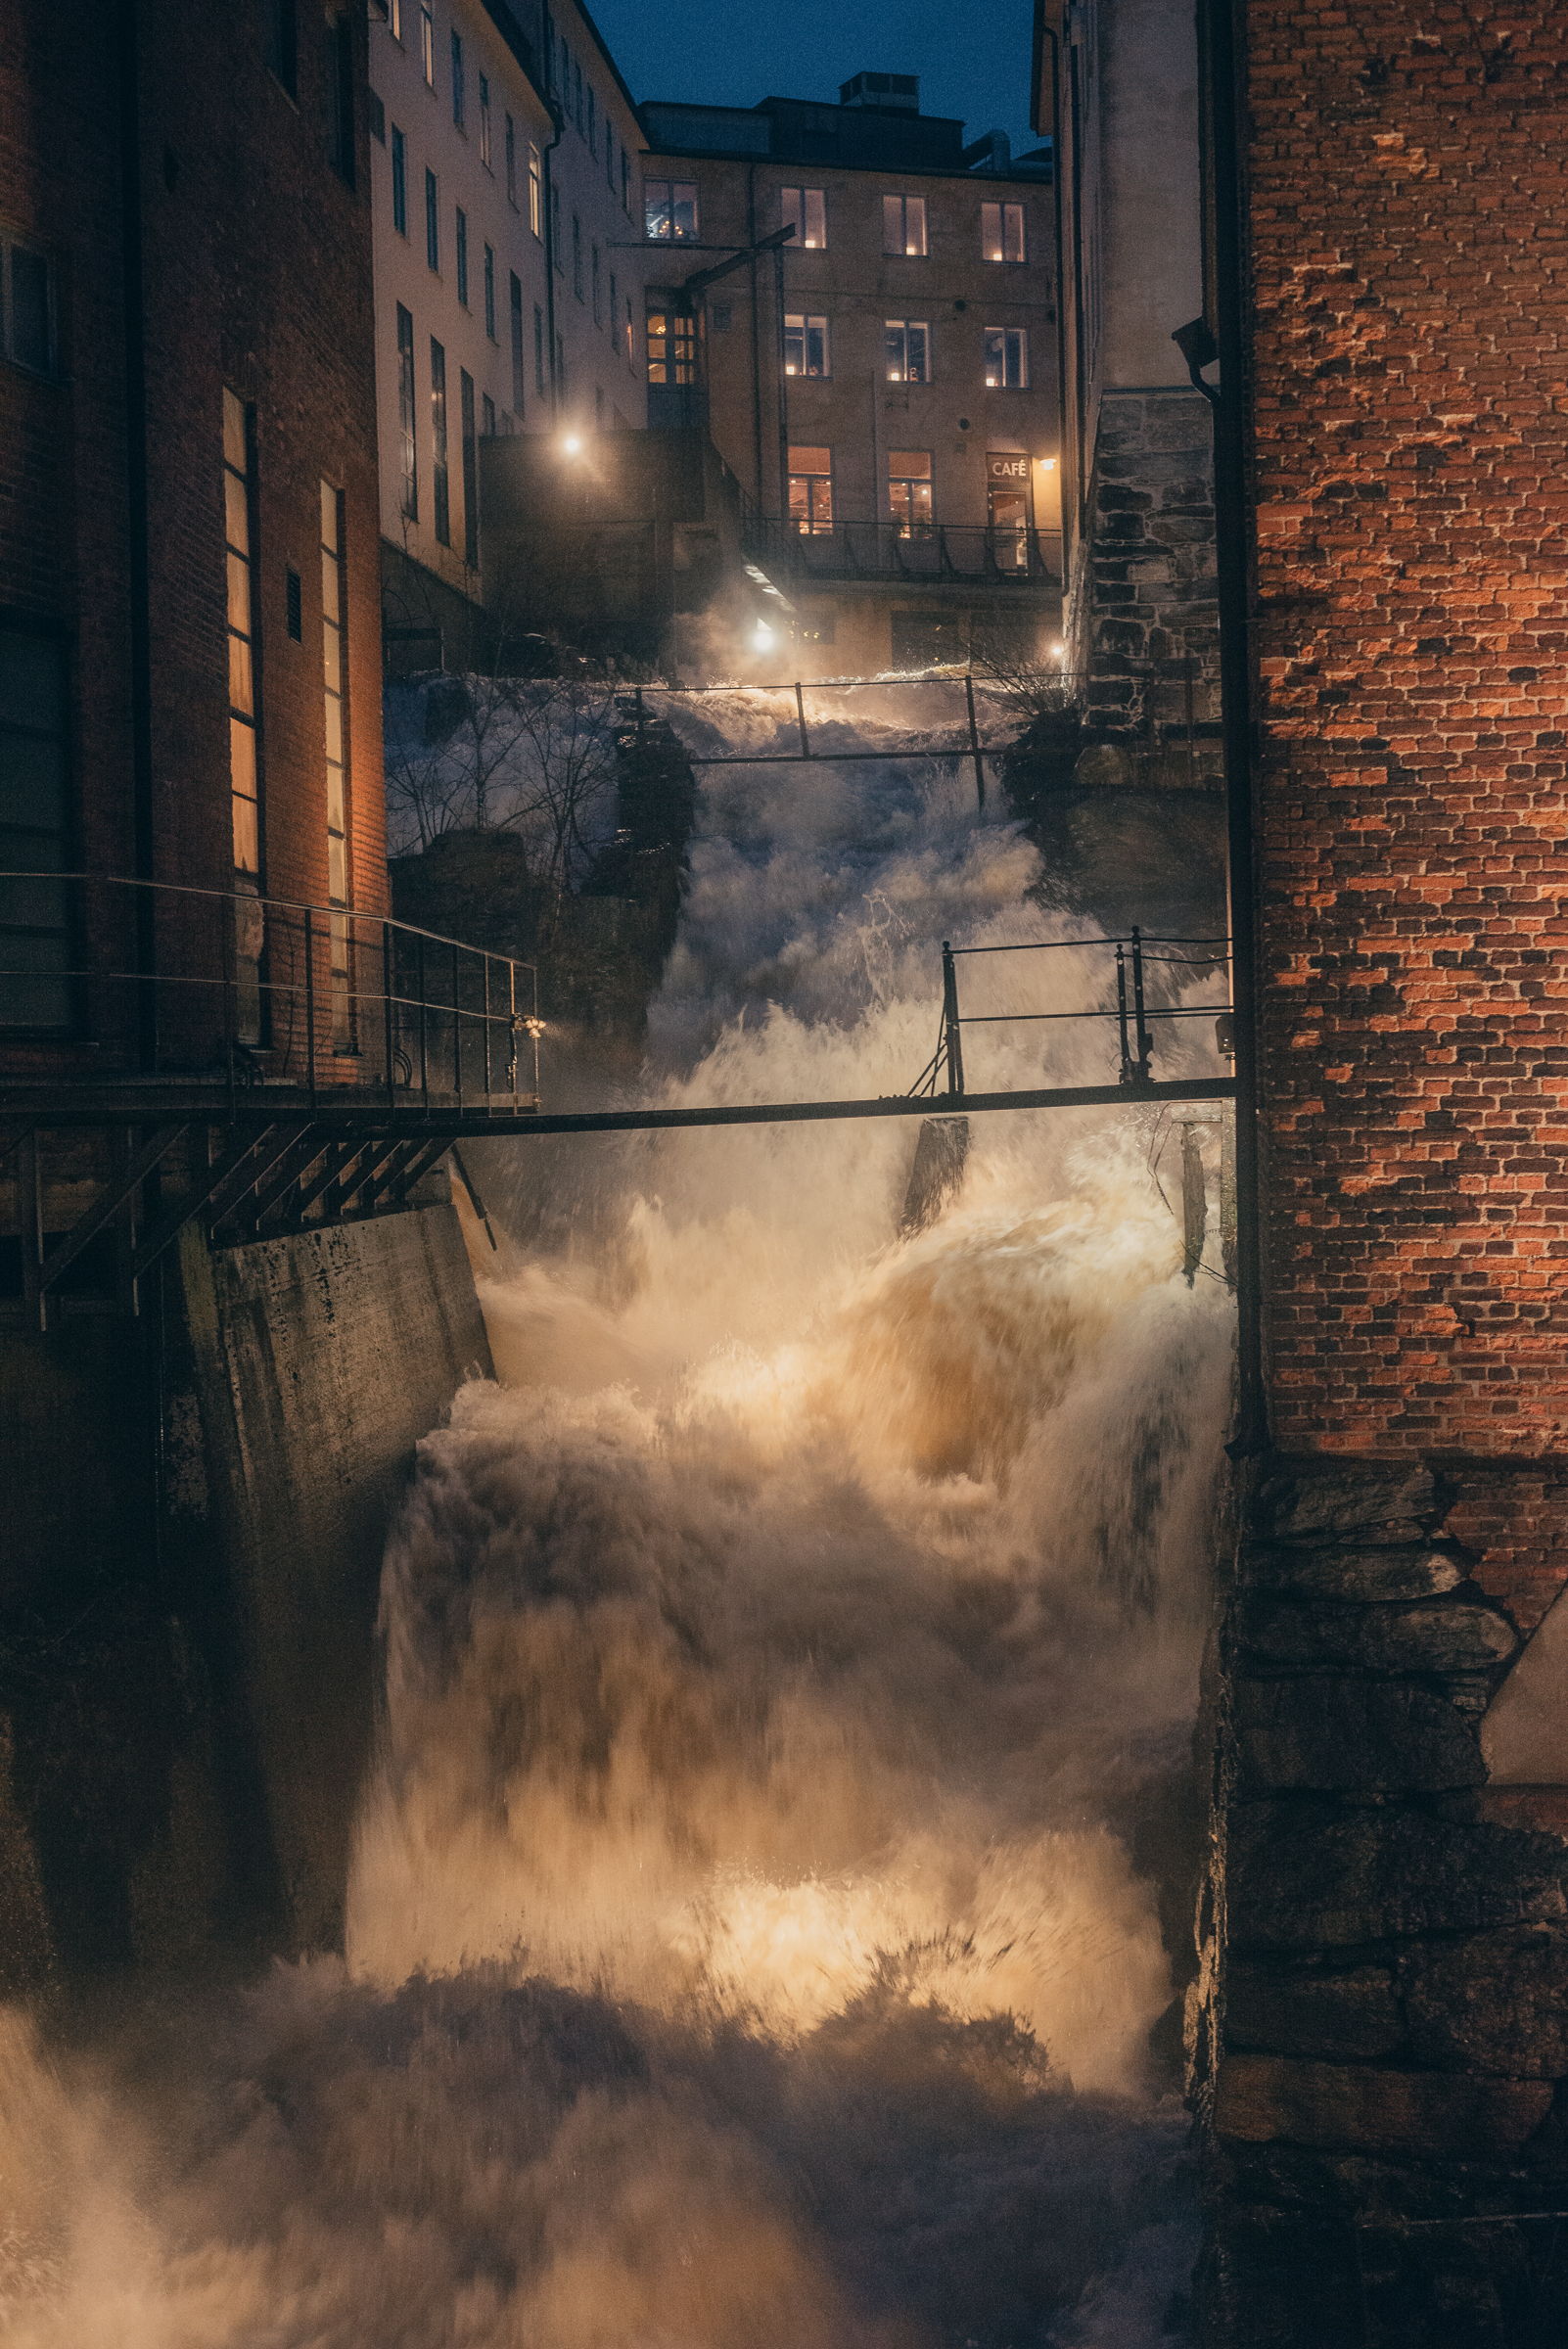 A steep water fall between old industrial buildings